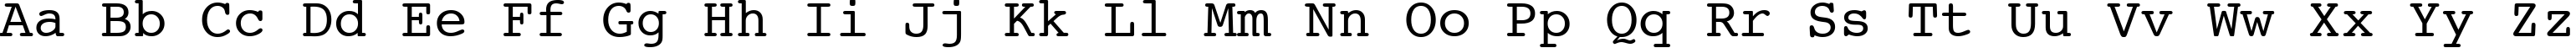 Пример написания английского алфавита шрифтом Courier 10 Pitch BT